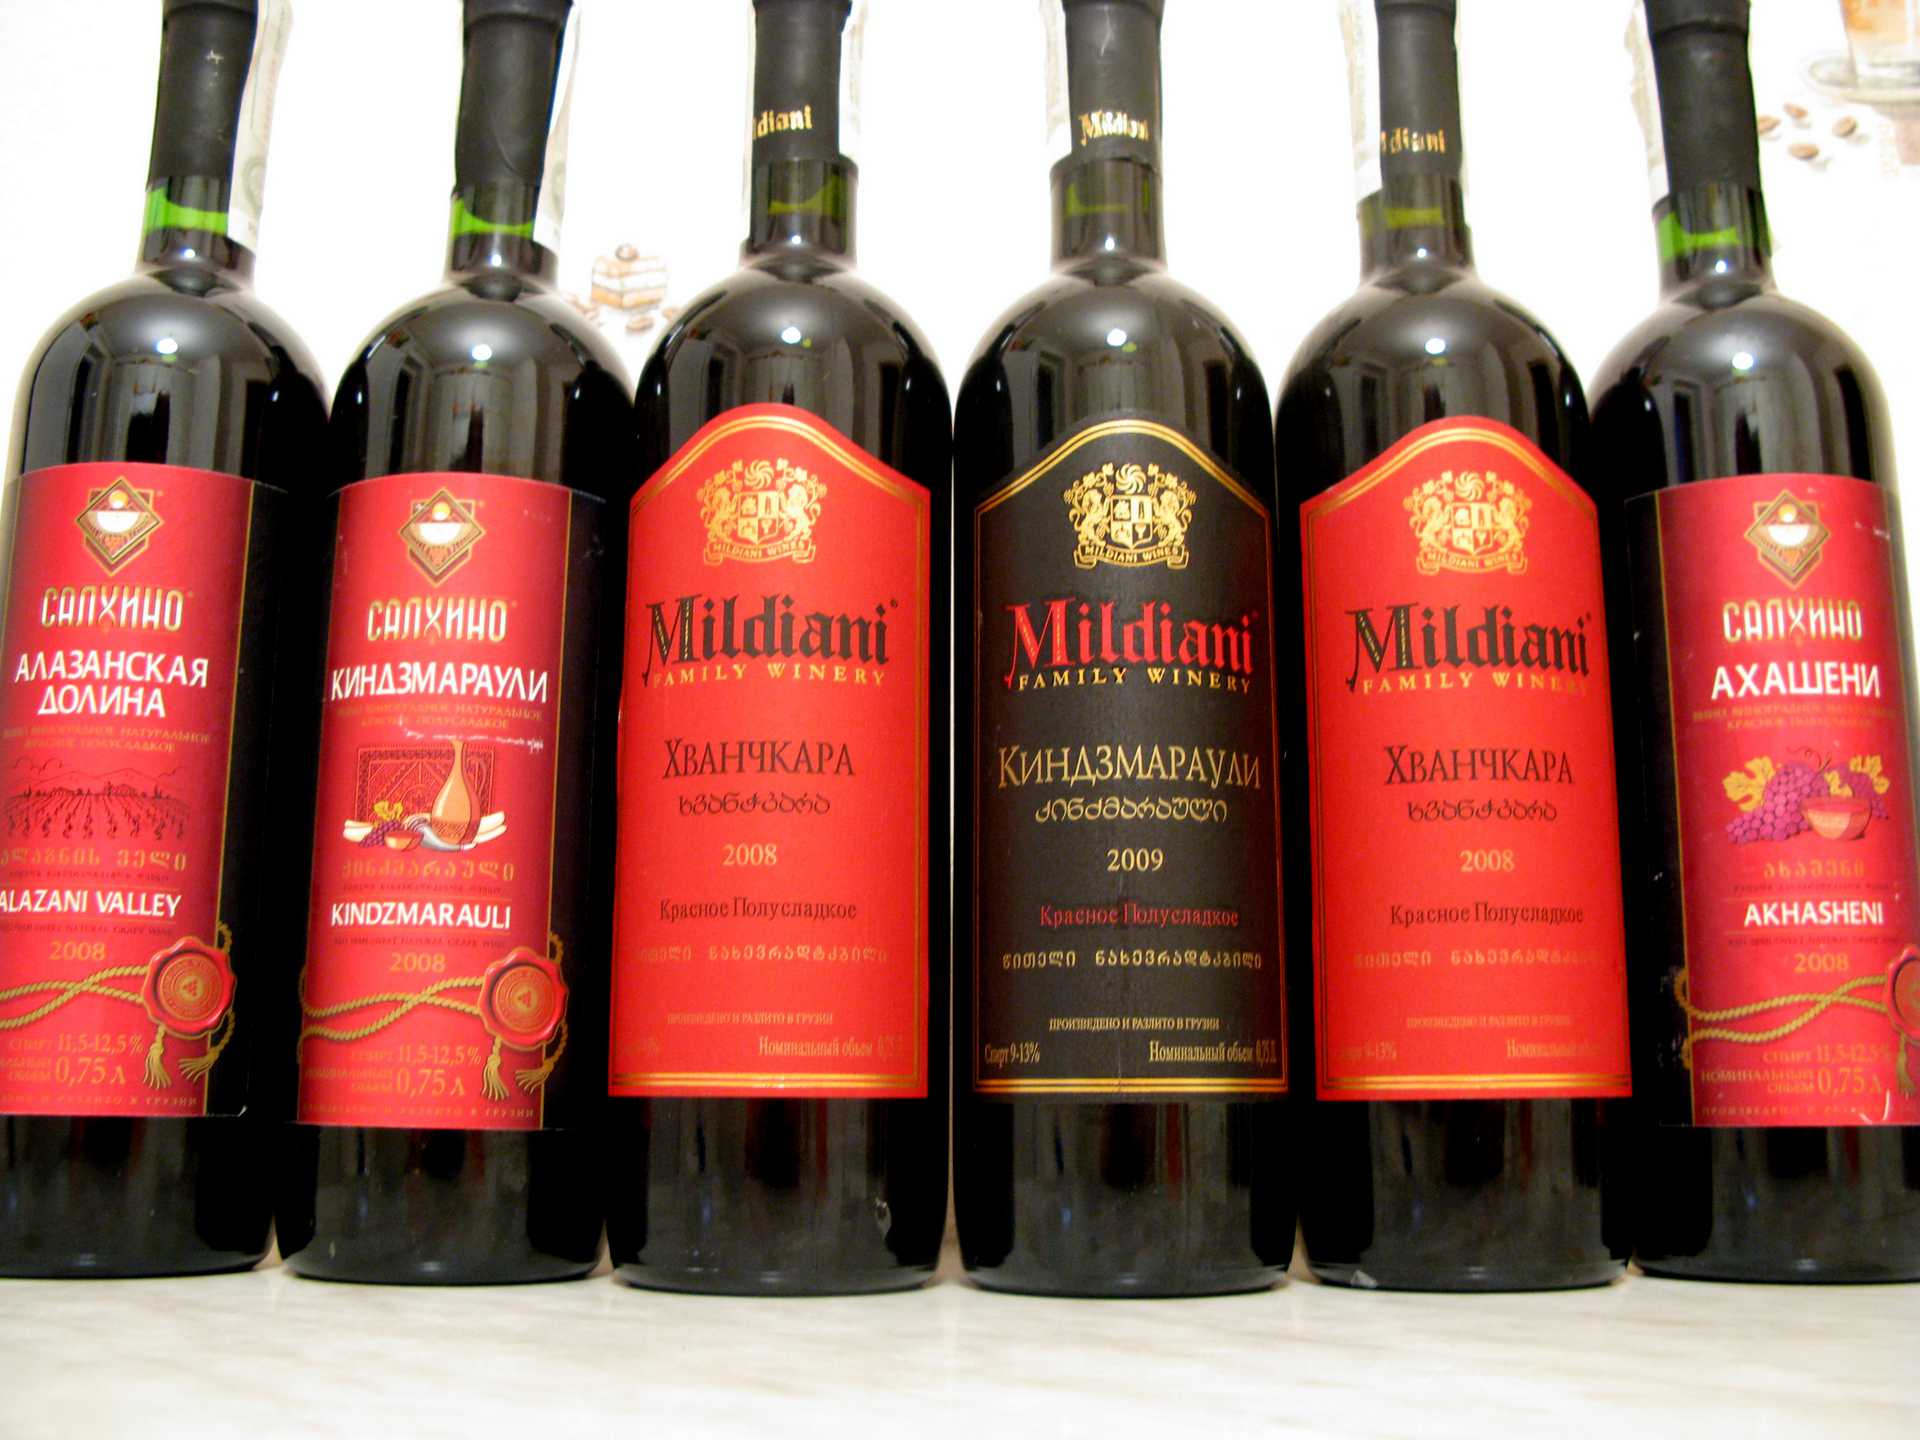 Вино красное хванчкара грузия